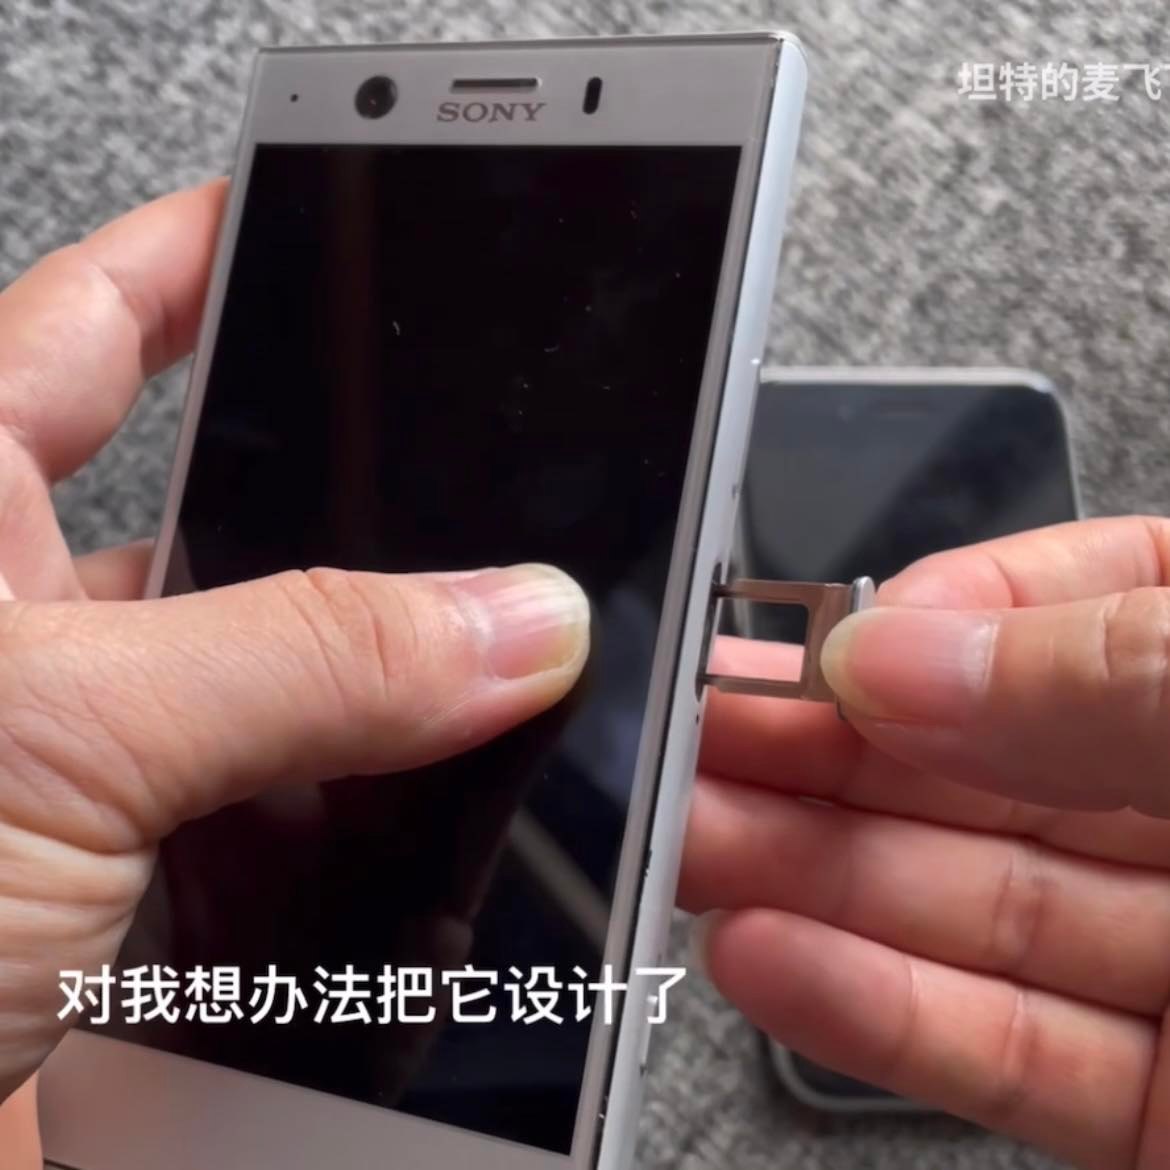  Cõi mạng thán phục pháp sư Trung Hoa khi độ chiếc điện thoại vỏ Sony, hệ điều hành iOS và pin Samsung!  - Ảnh 4.